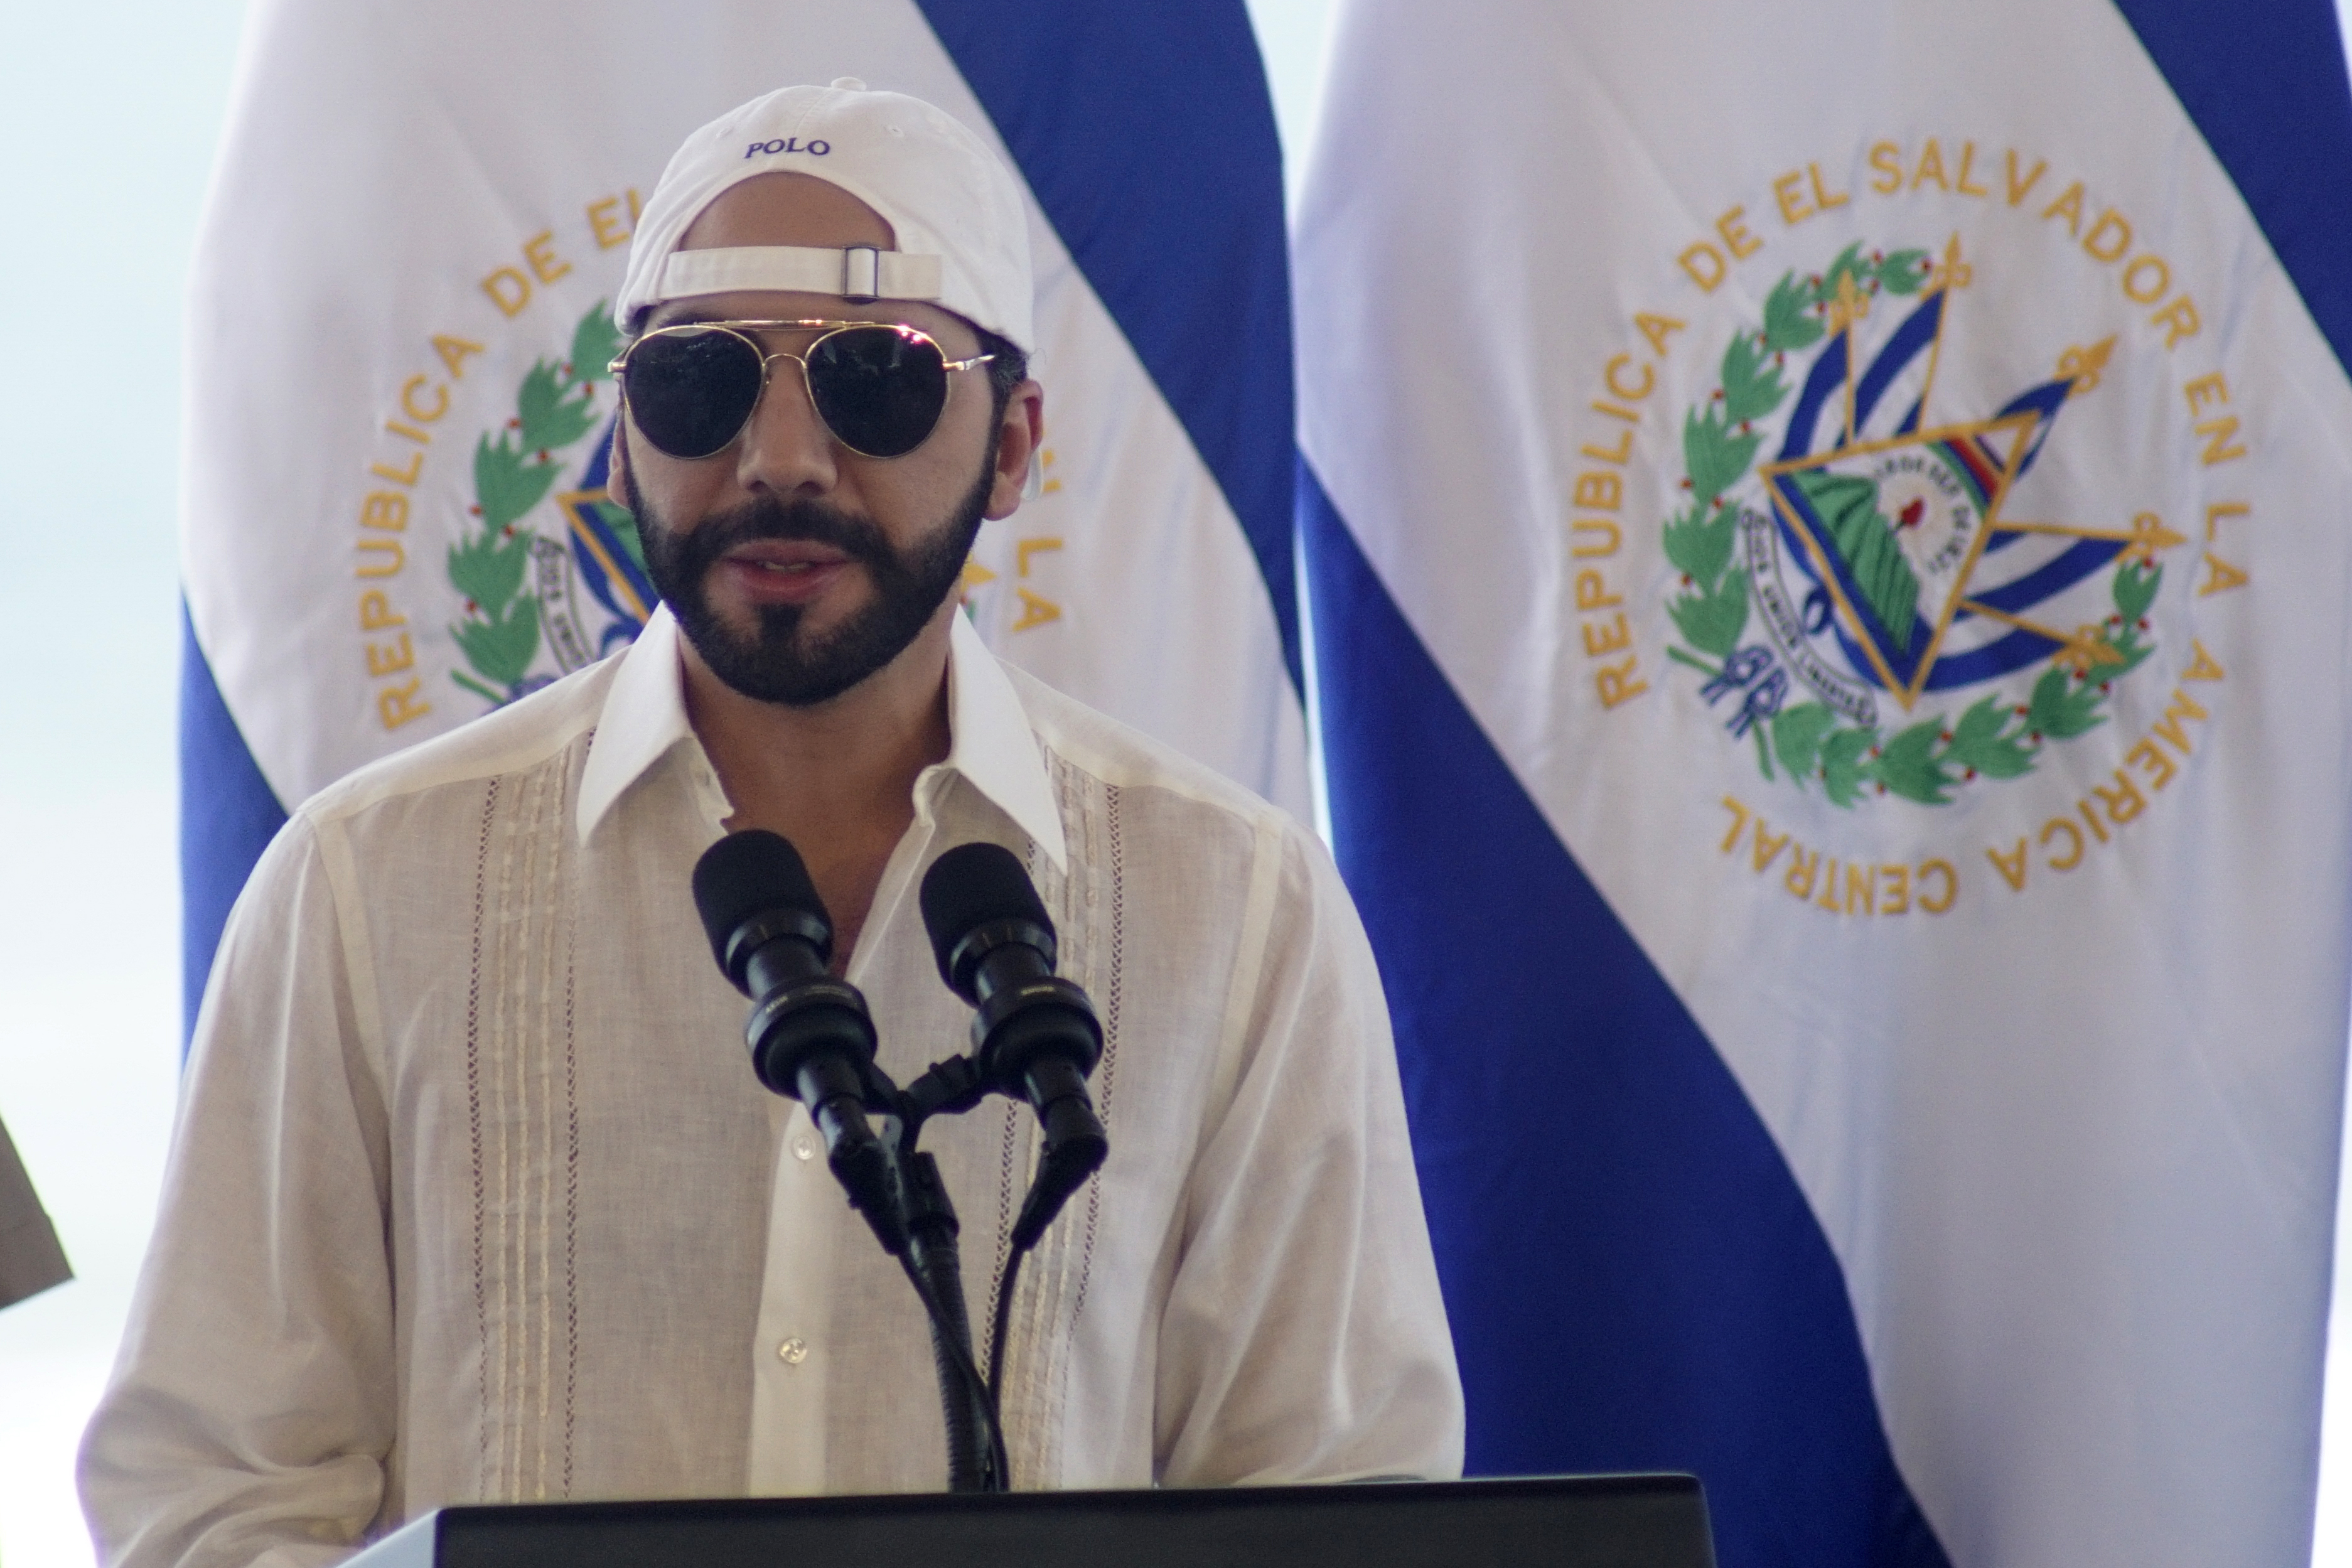 El desplome de Bitcoin se está llevando consigo la gran apuesta de El Salvador